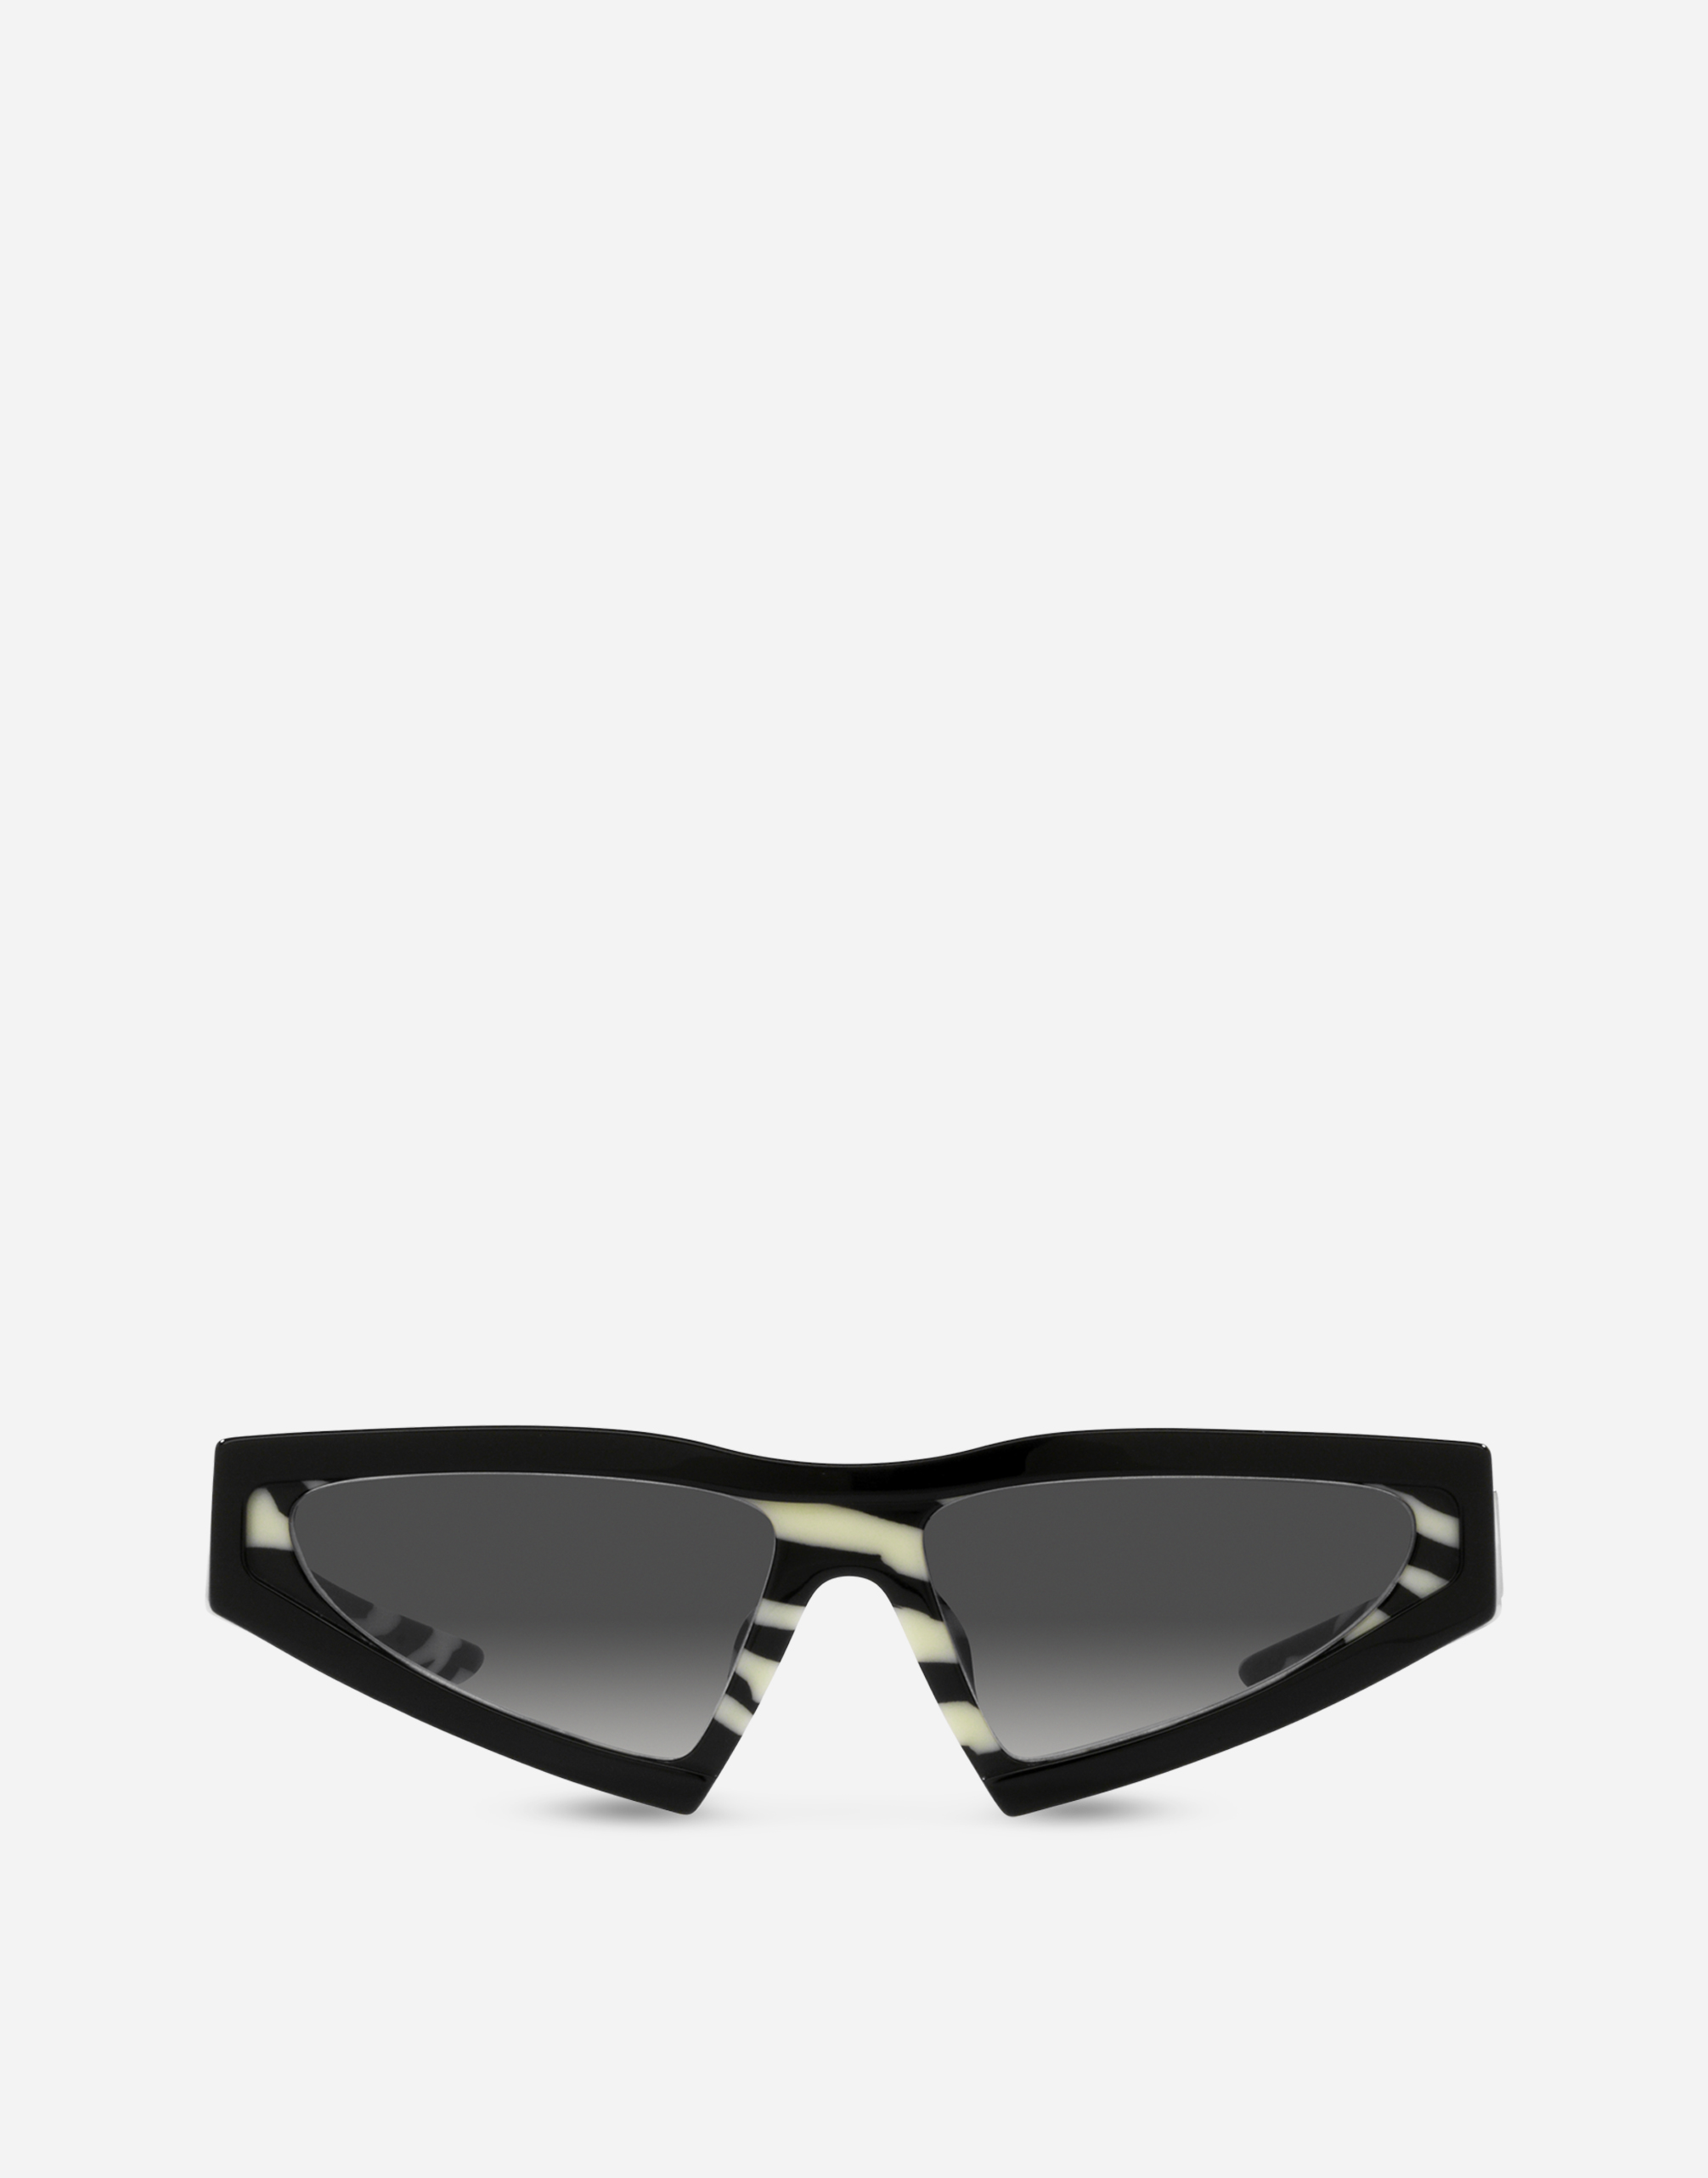 Dolce & Gabbana Zebra Sunglasses In Black & Zebra Print